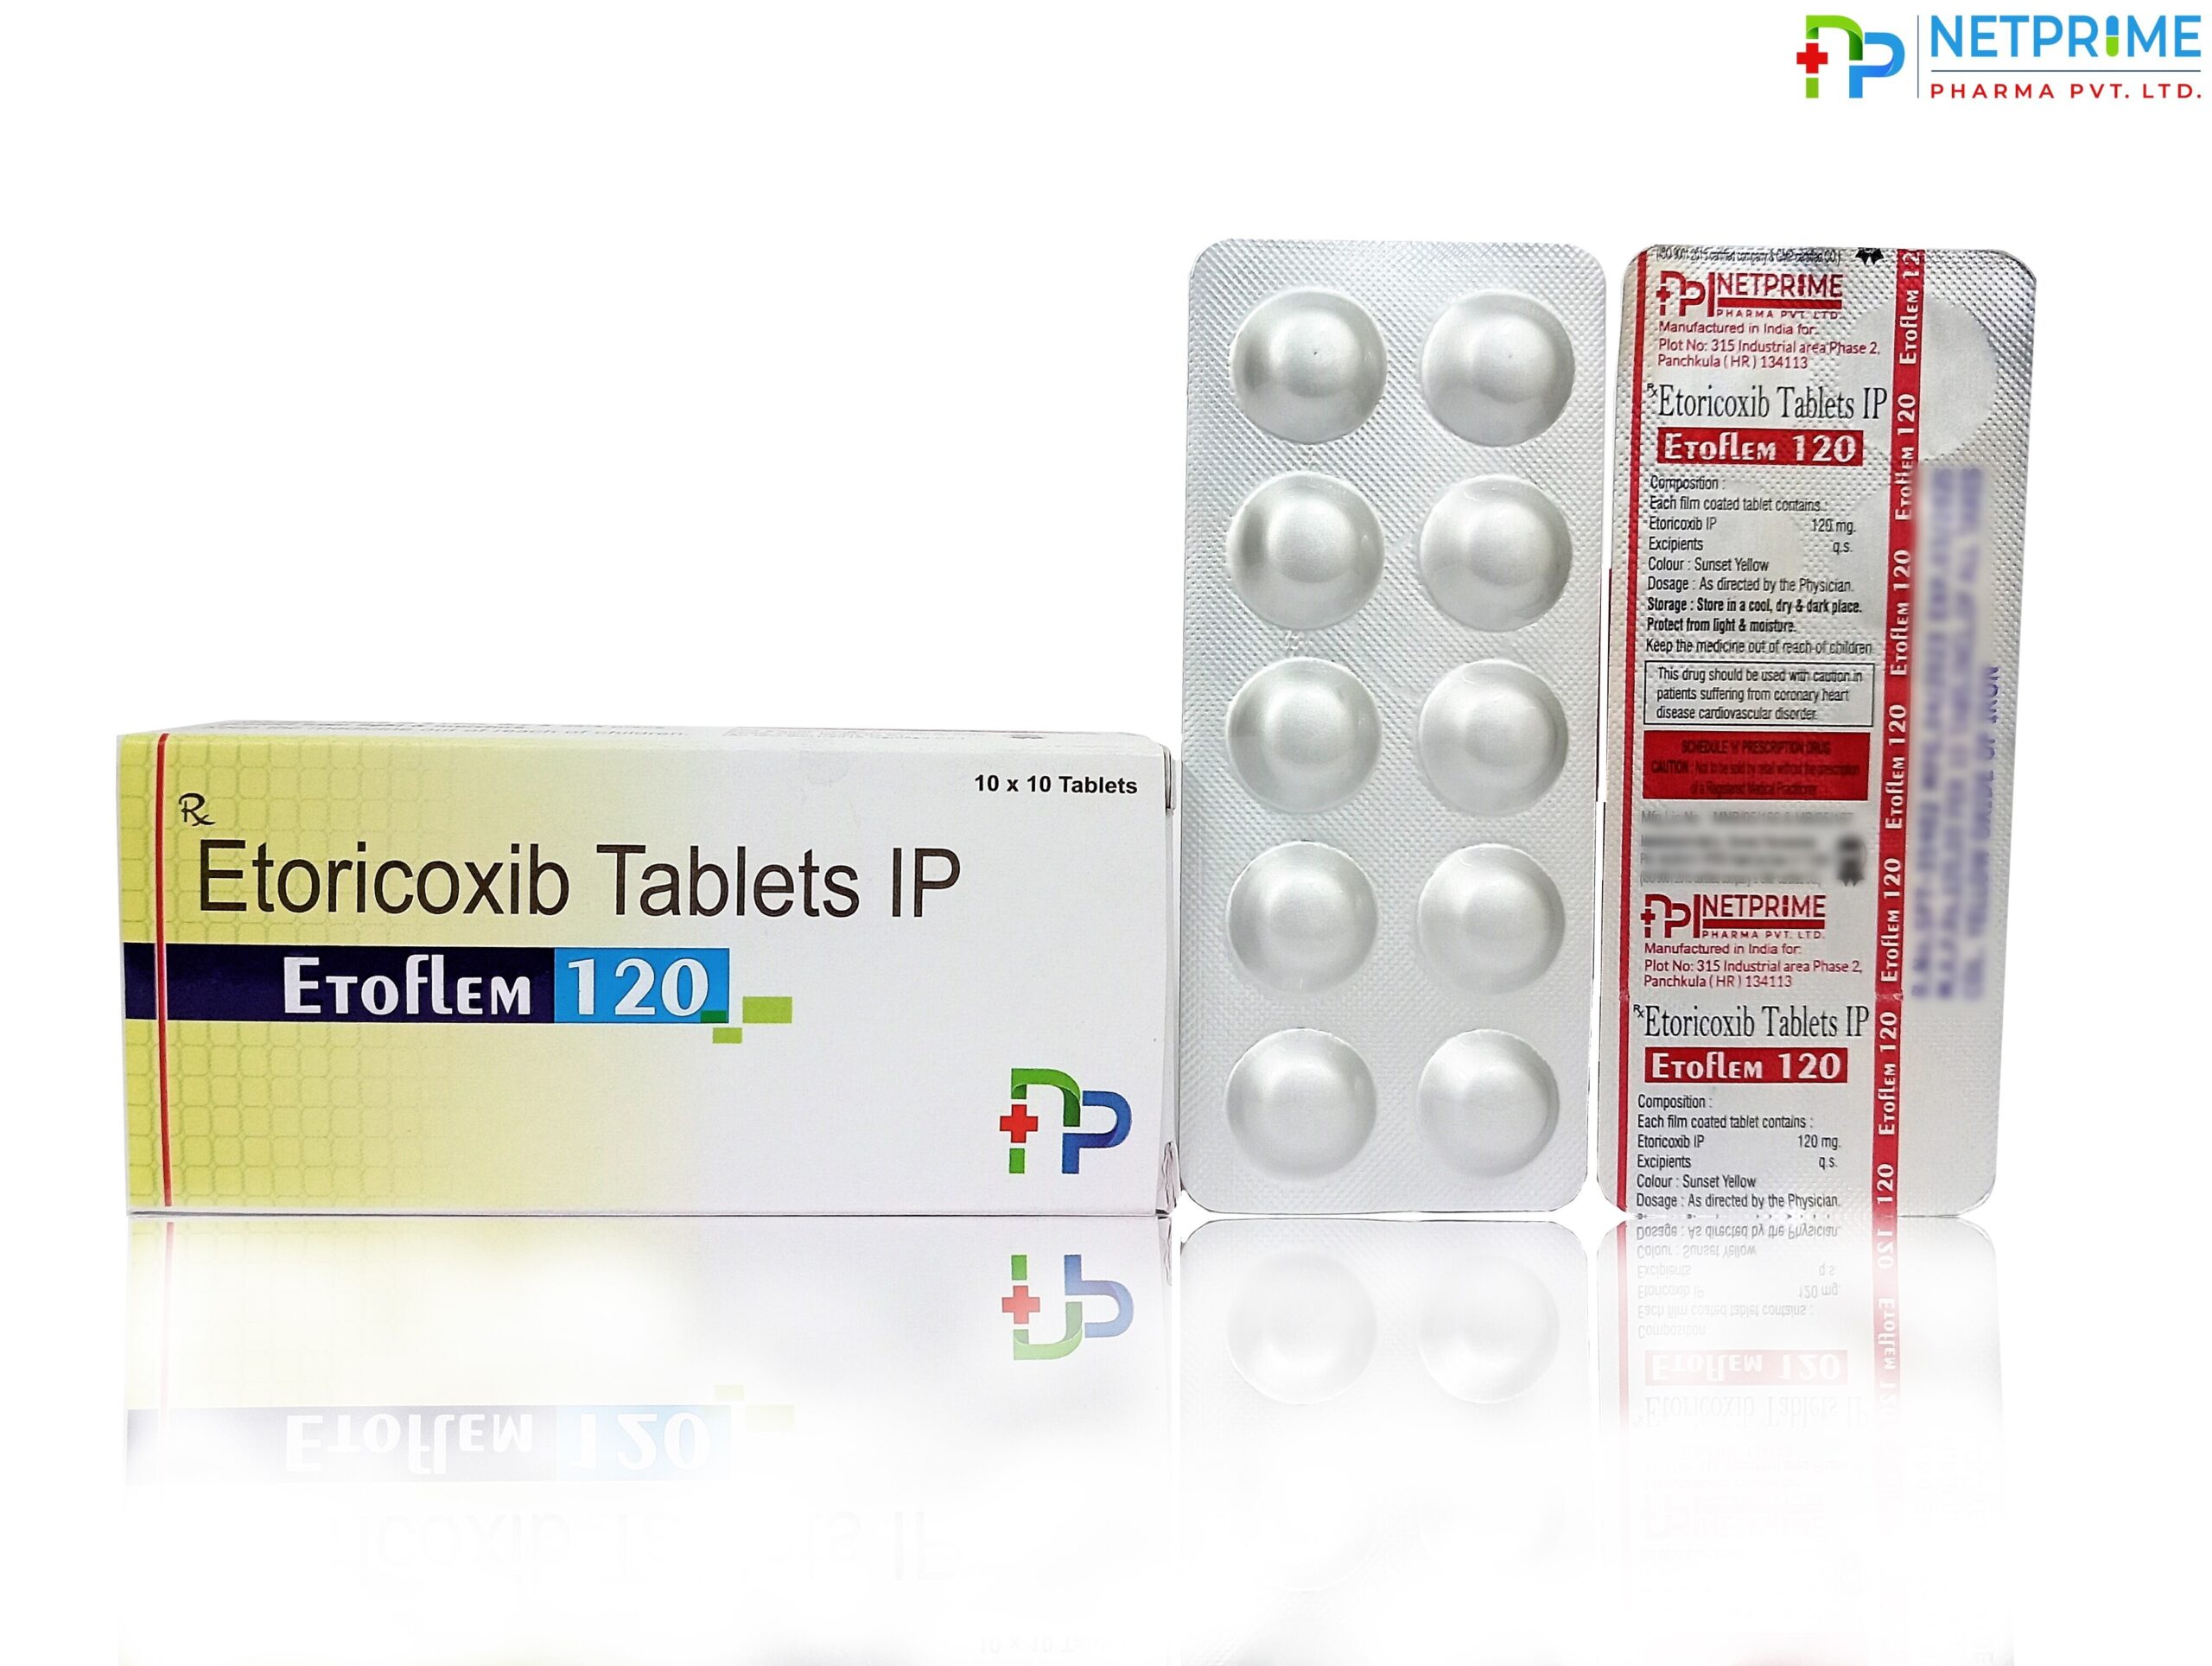 Etoricoxib I.P. 120 mg Tablets